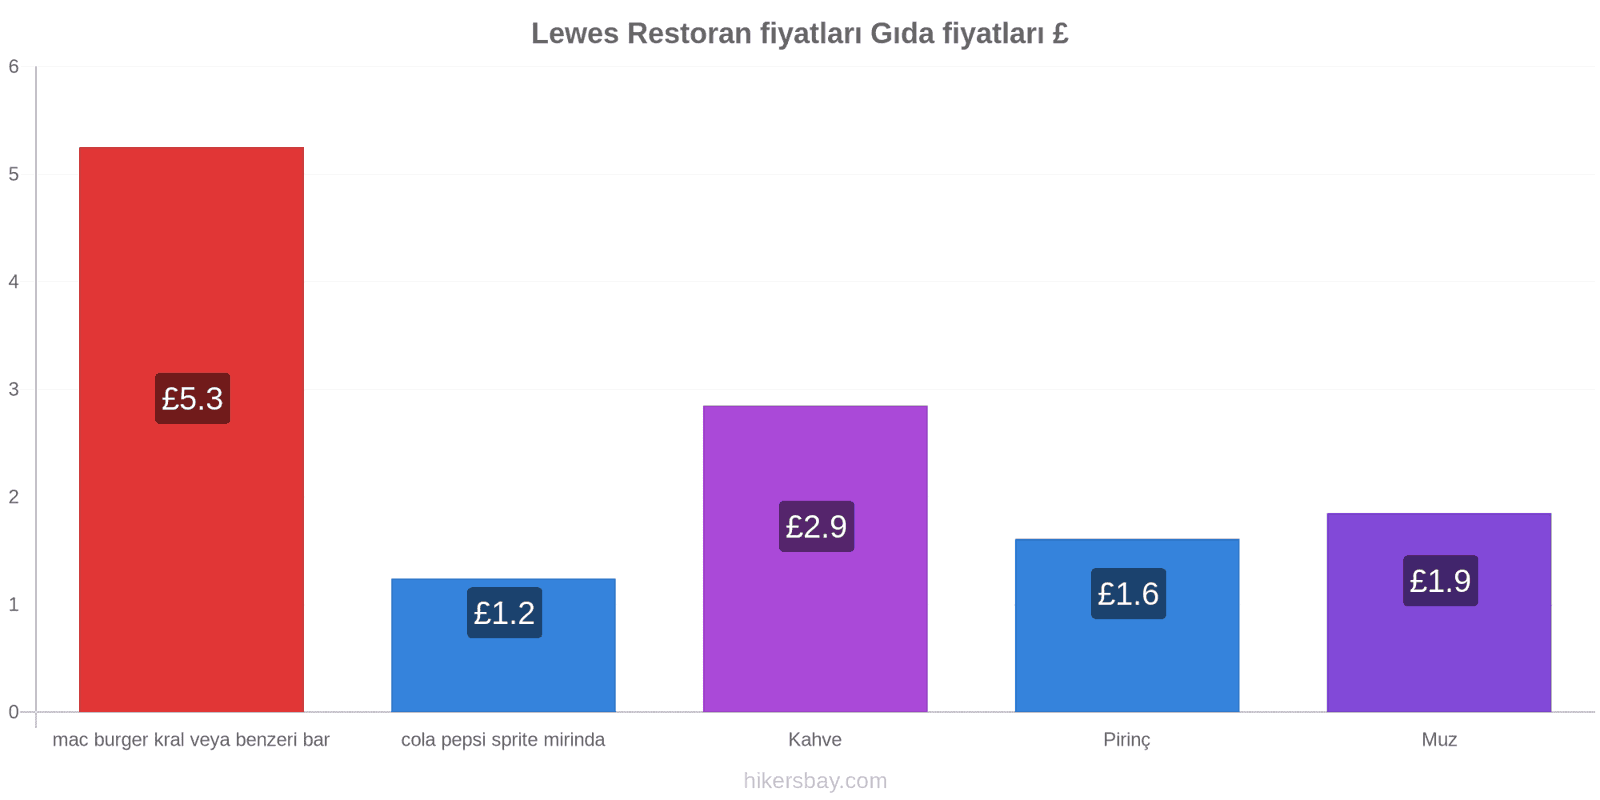 Lewes fiyat değişiklikleri hikersbay.com